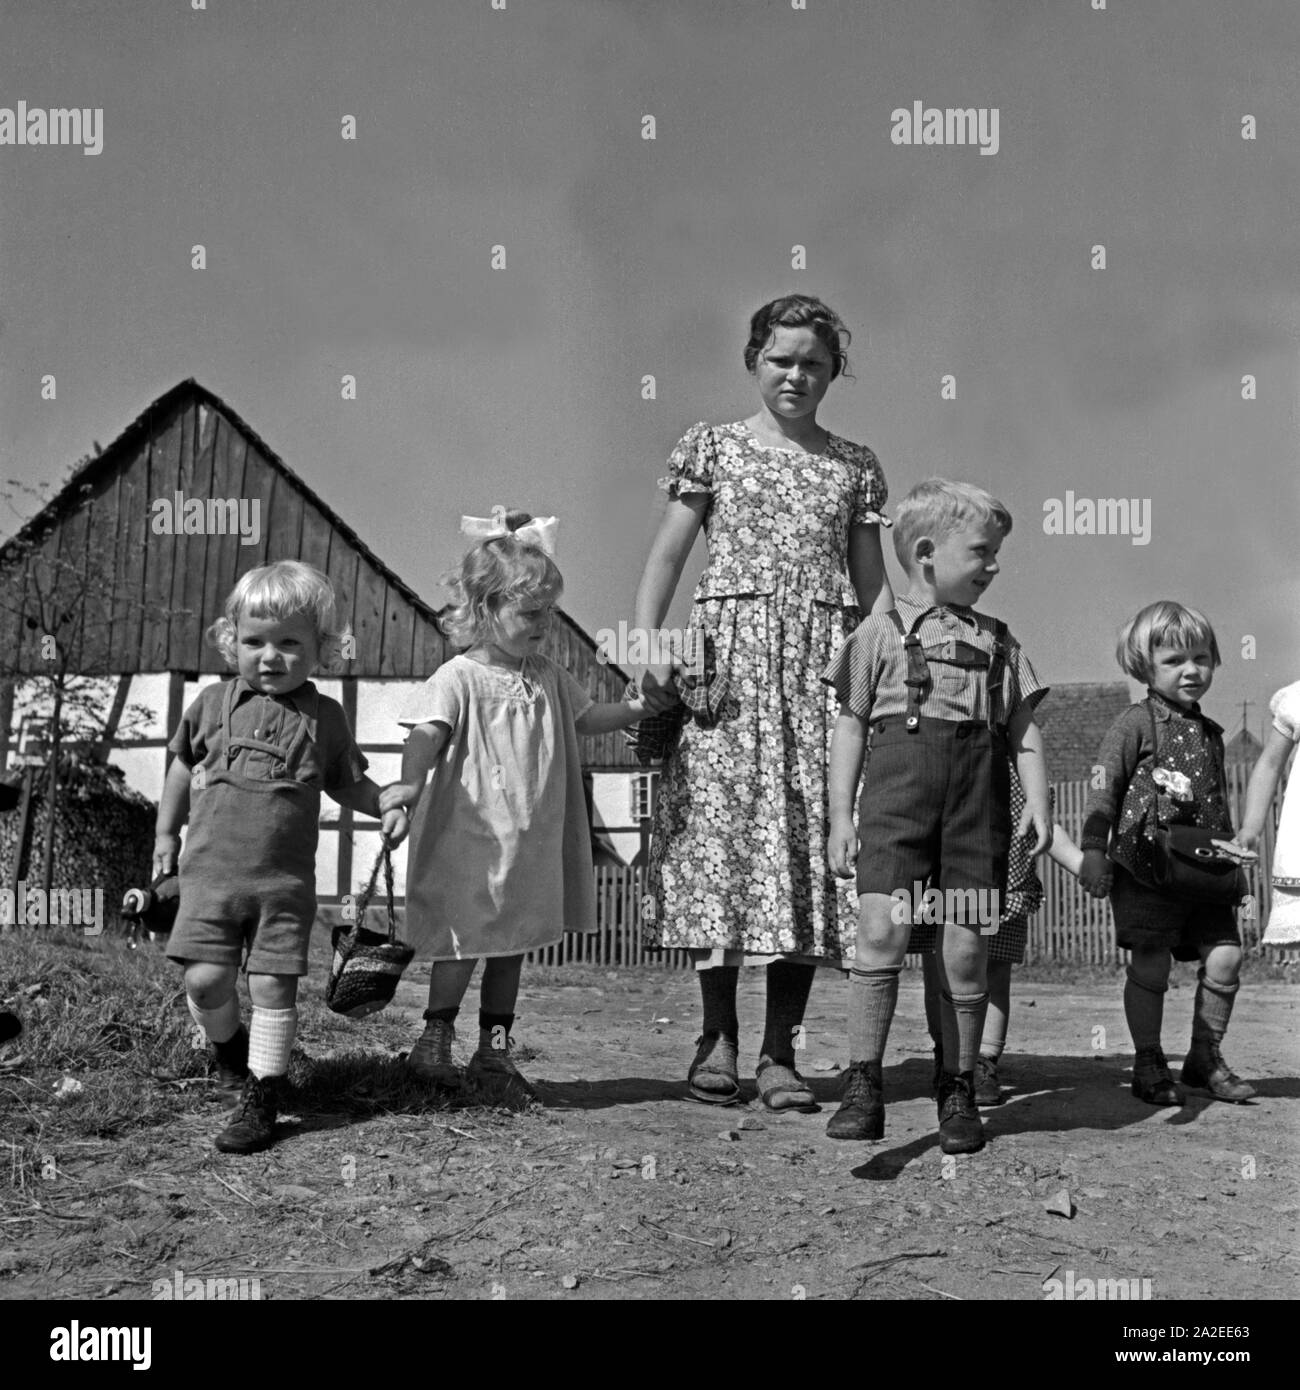 Ein Mädchen passt auf kleine Kinder auf im Rahmen ihres Aufenthalts im Landjahr Mädel in Polle an der Weser, Deutschland 1930er Jahre. Una ragazza baby qualche bambino mentre si è al BdM camp a polle, Germania 1930s. Foto Stock